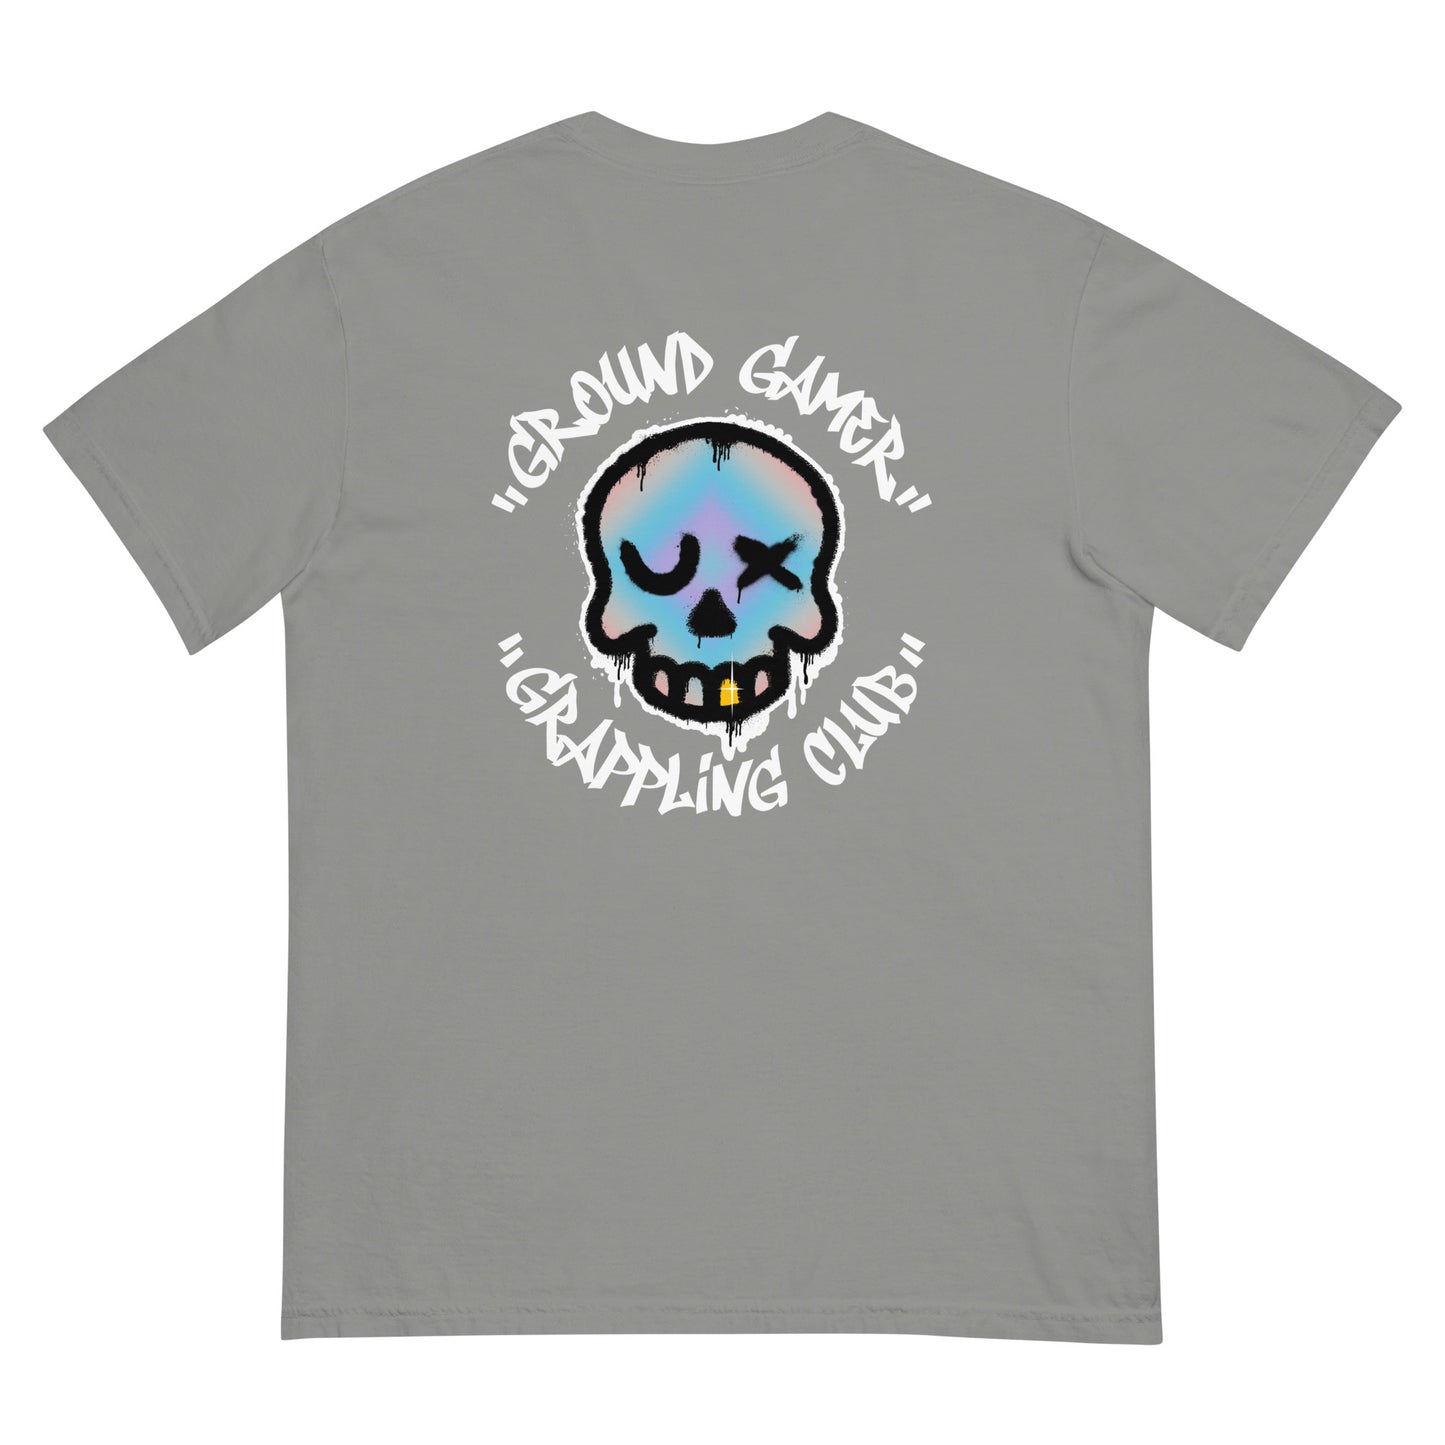 Grappler's Club Unisex garment-dyed heavyweight t-shirt